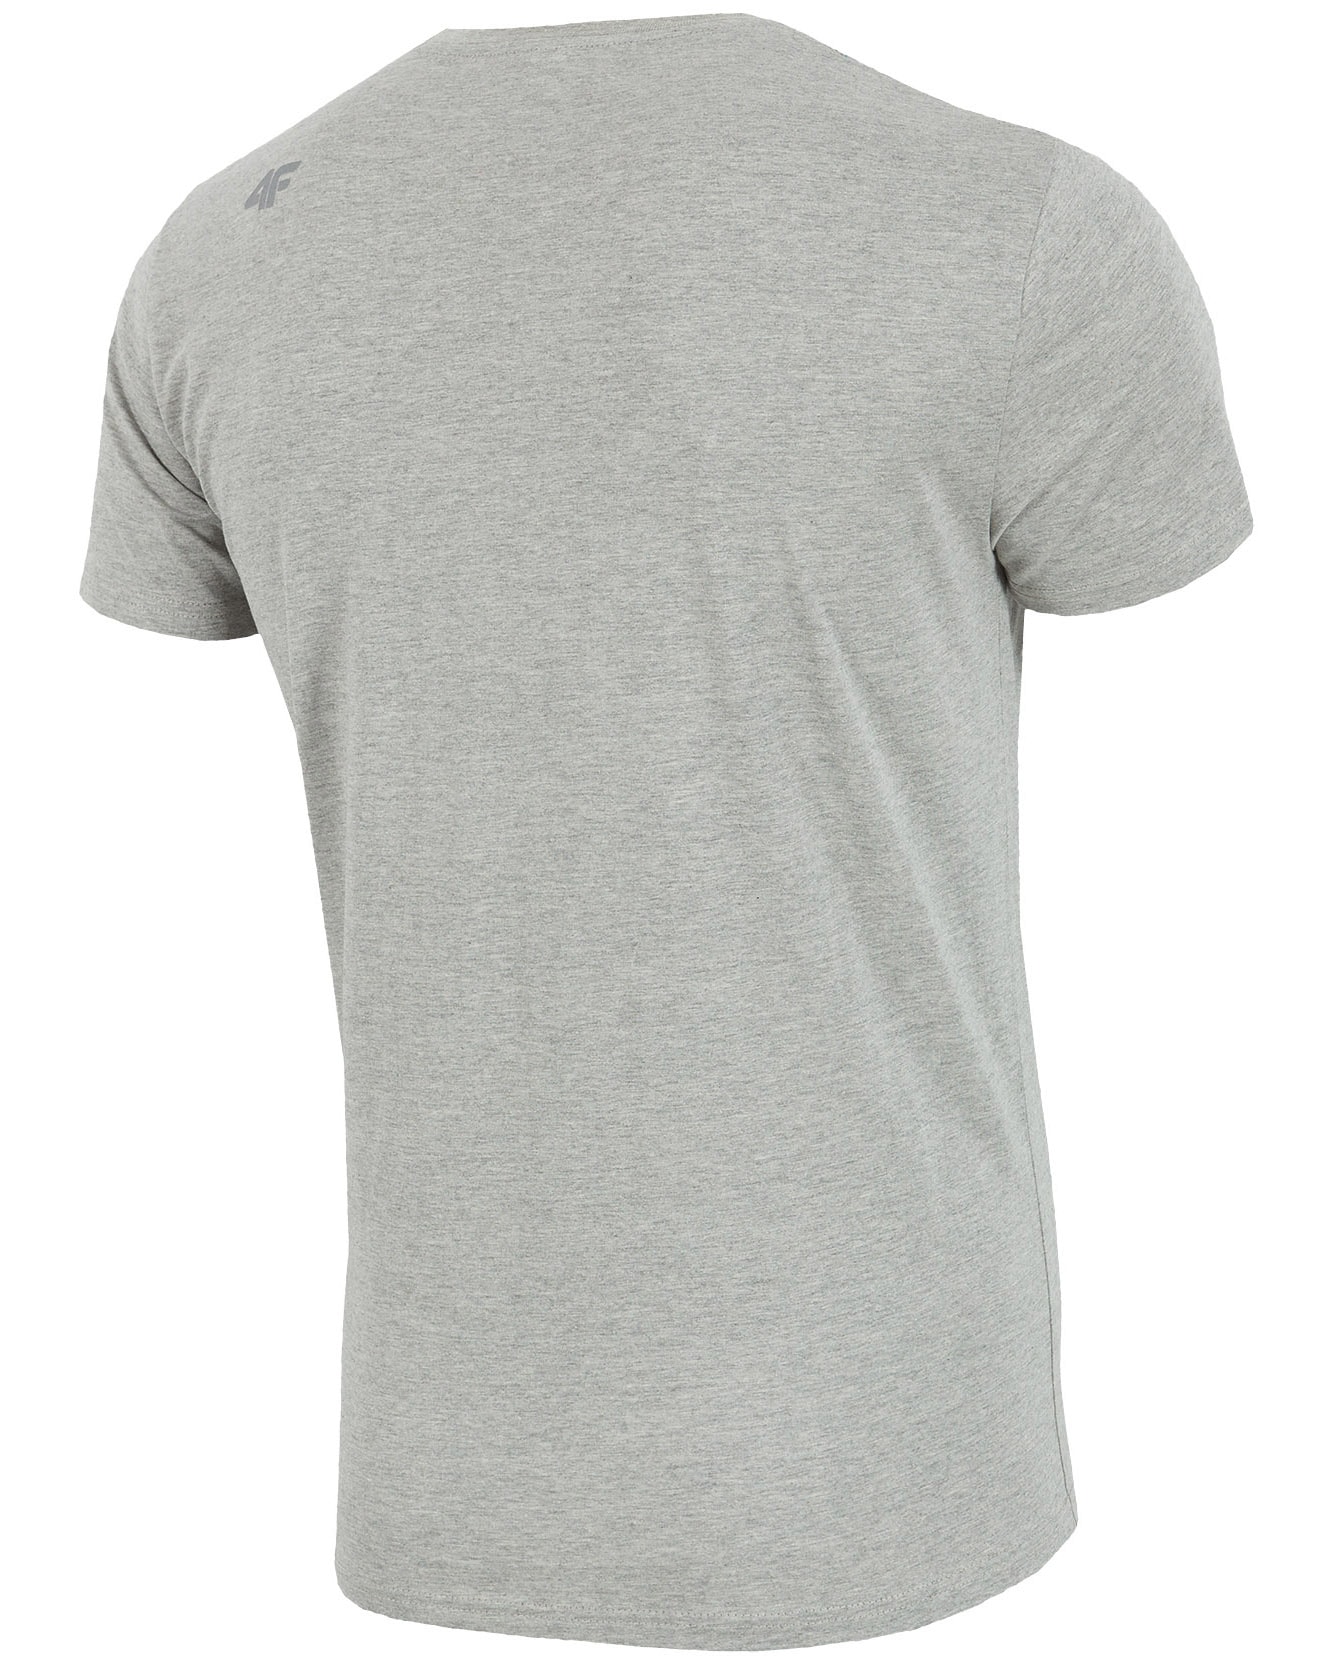 4F T-Shirt - Light Gray Melange